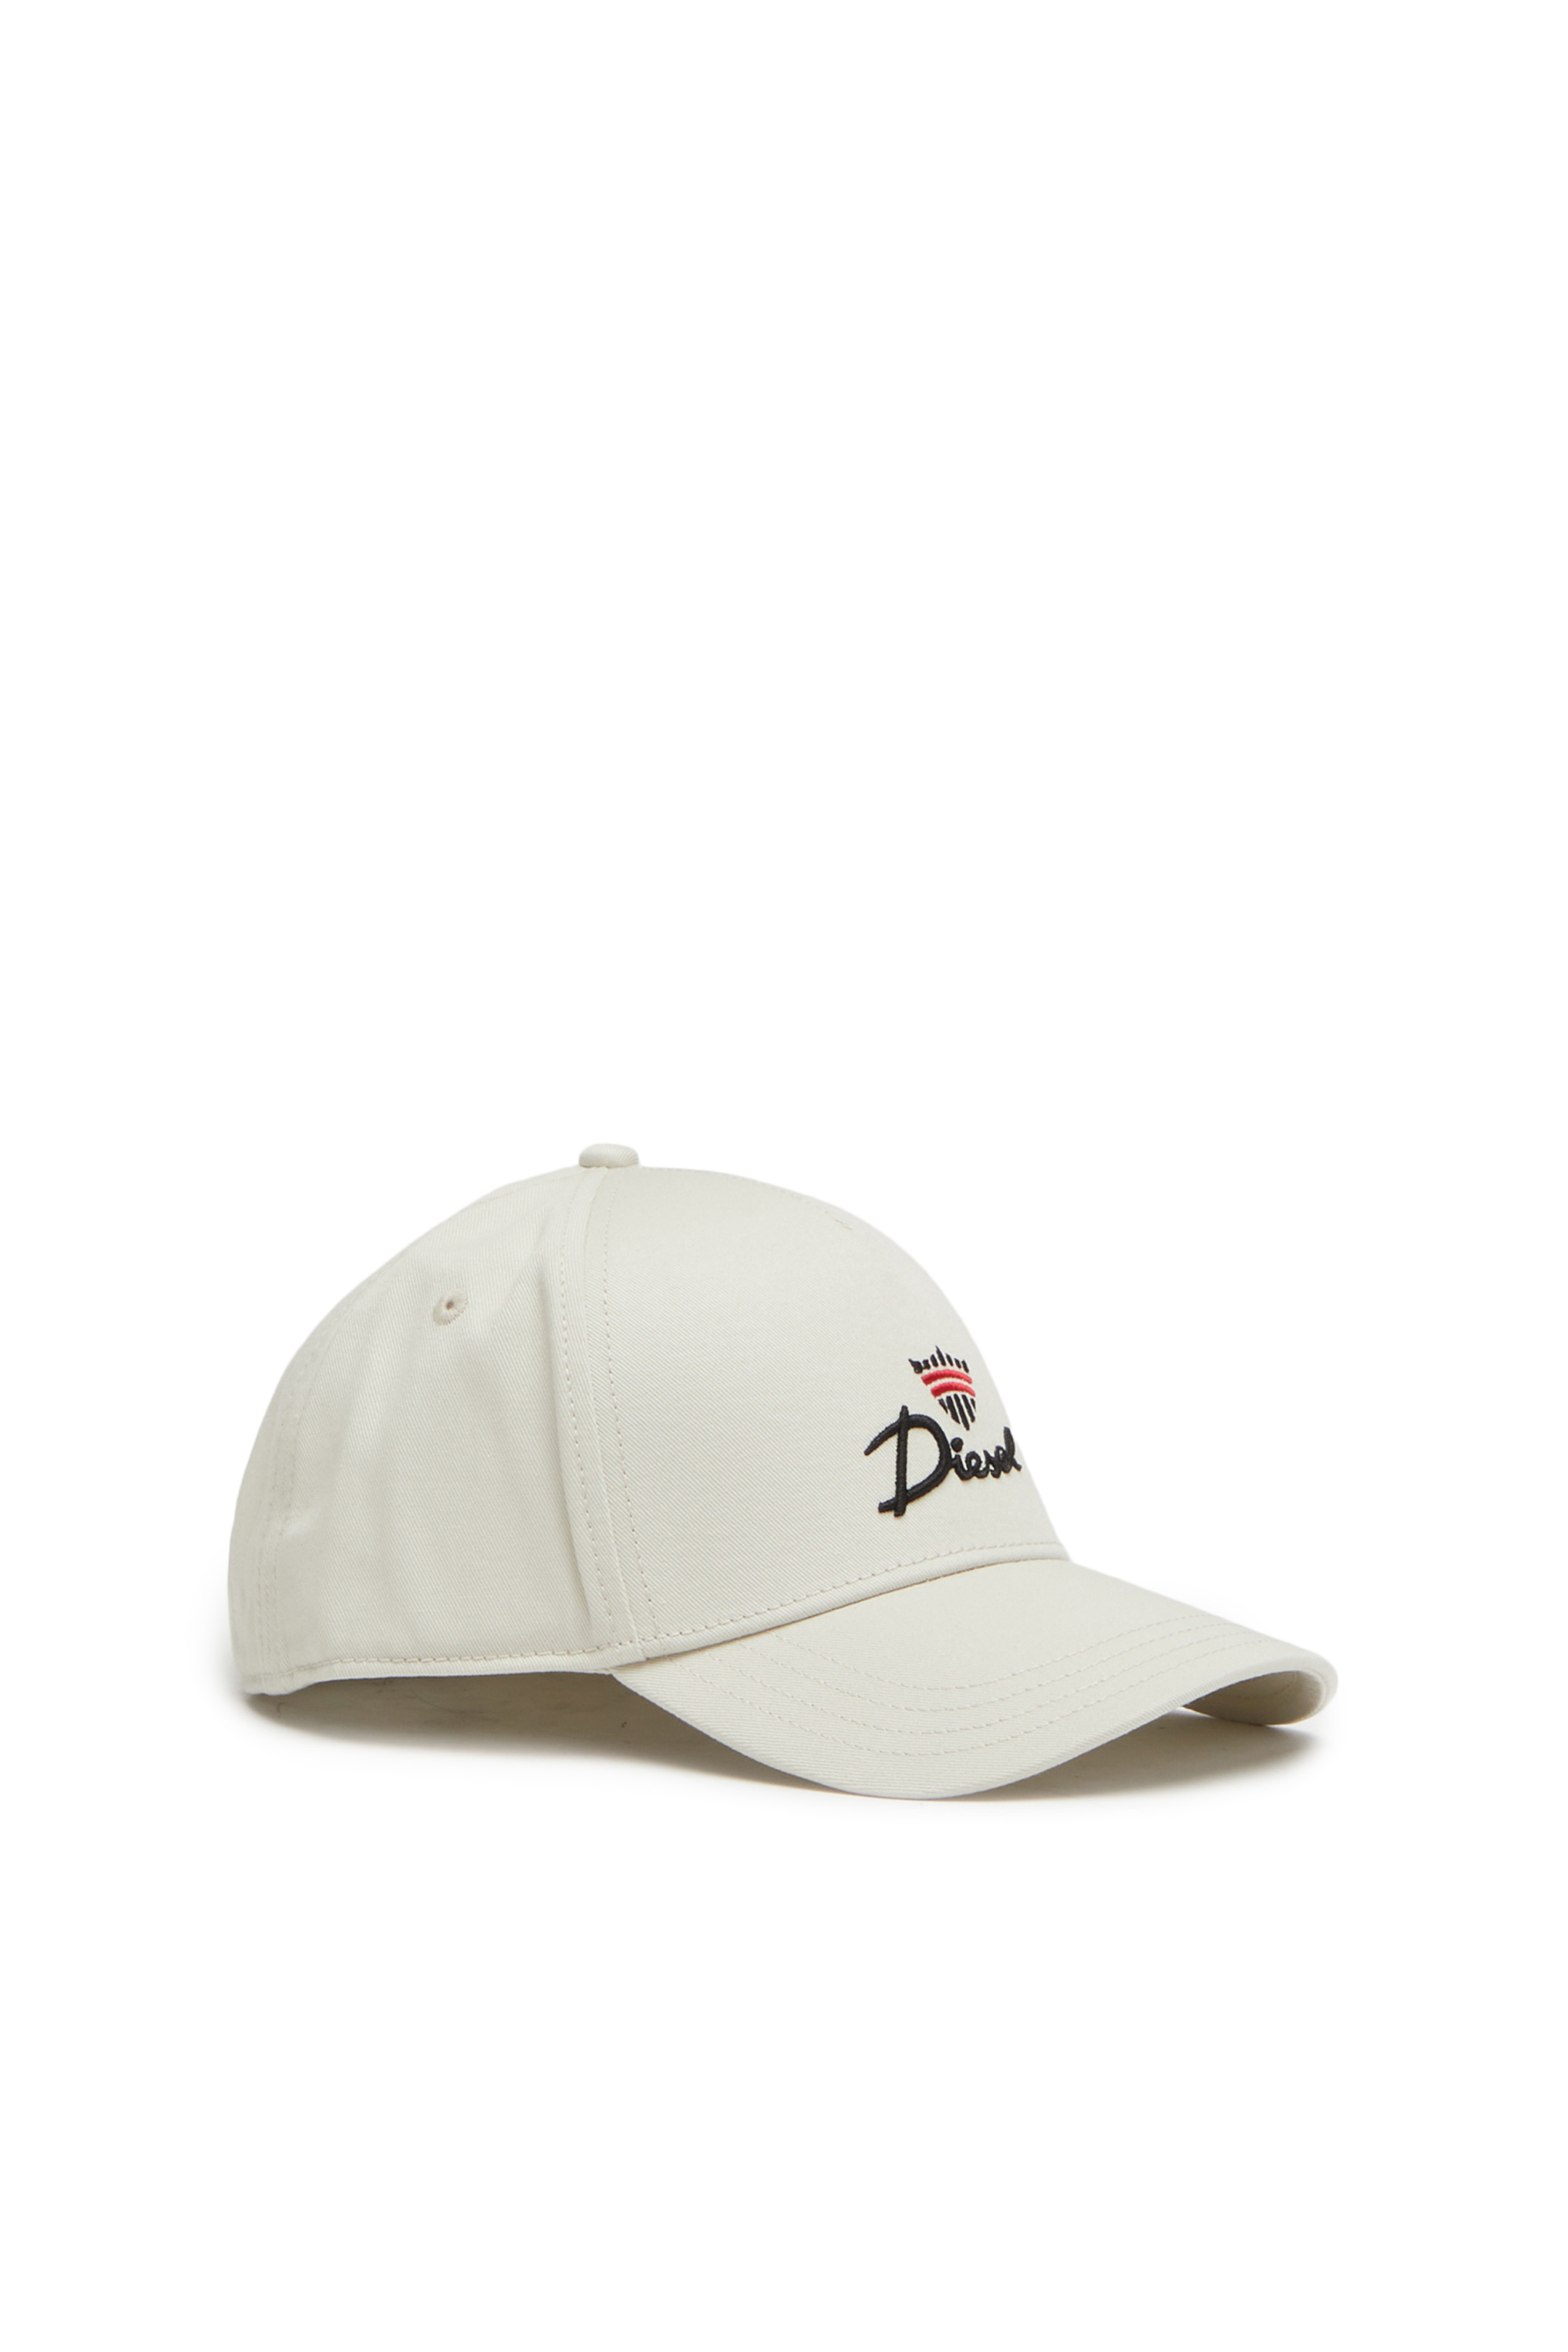 Diesel - Berretto da baseball con logo Diesel e corona ricamati - Cappelli - Uomo - Bianco